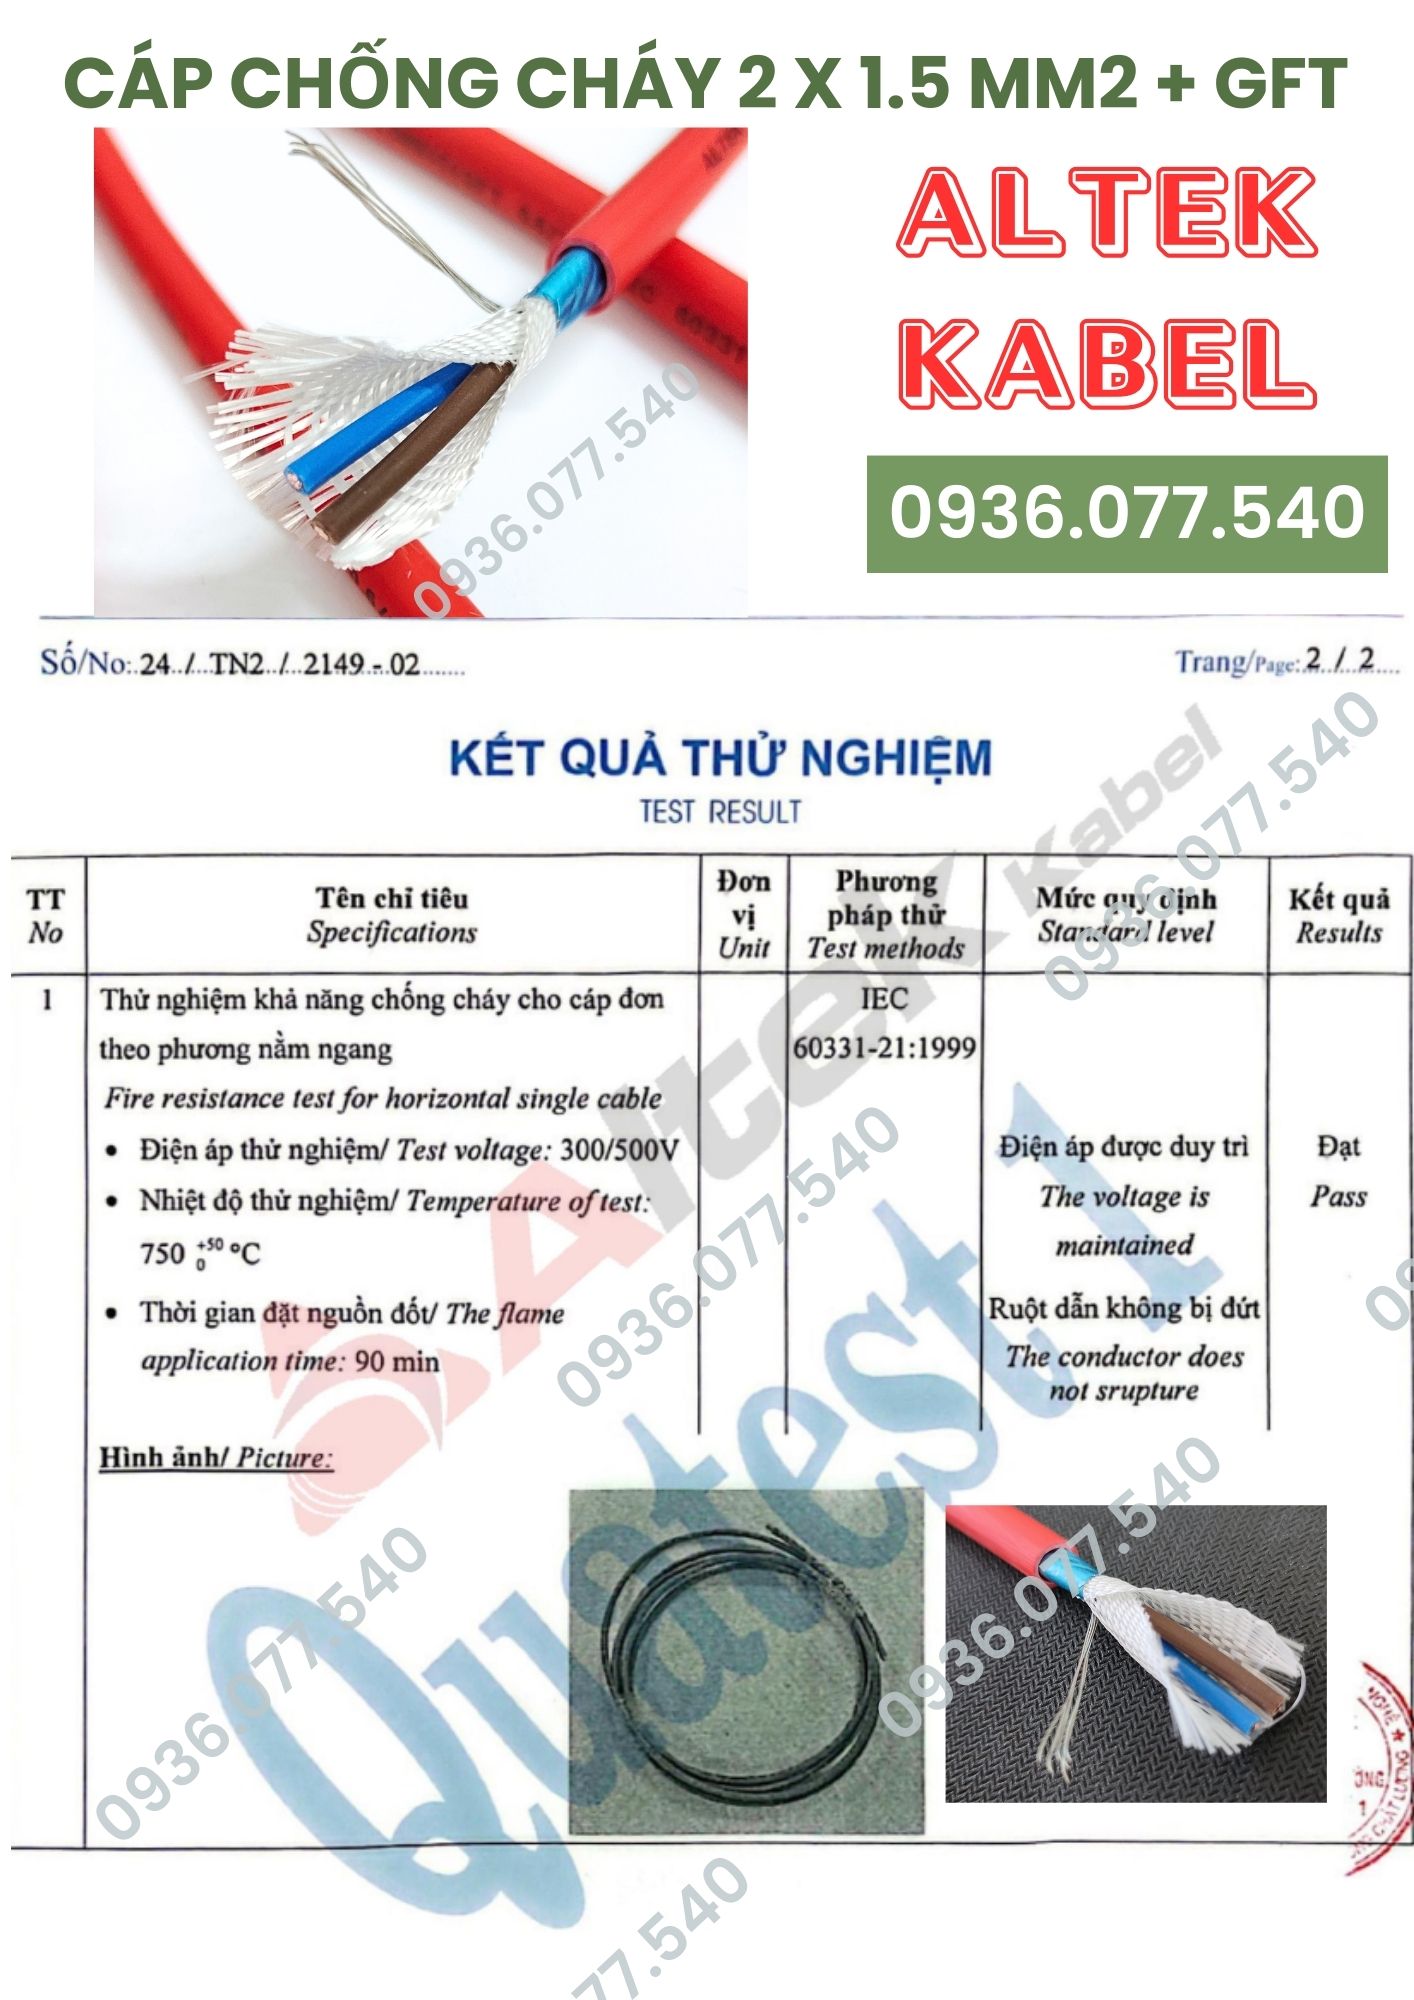 Cáp chống cháy Altek Kabel 2x1.5 + e + gft chính hãng, kiểm định Quatest 1, 750 độ trong 90 phút